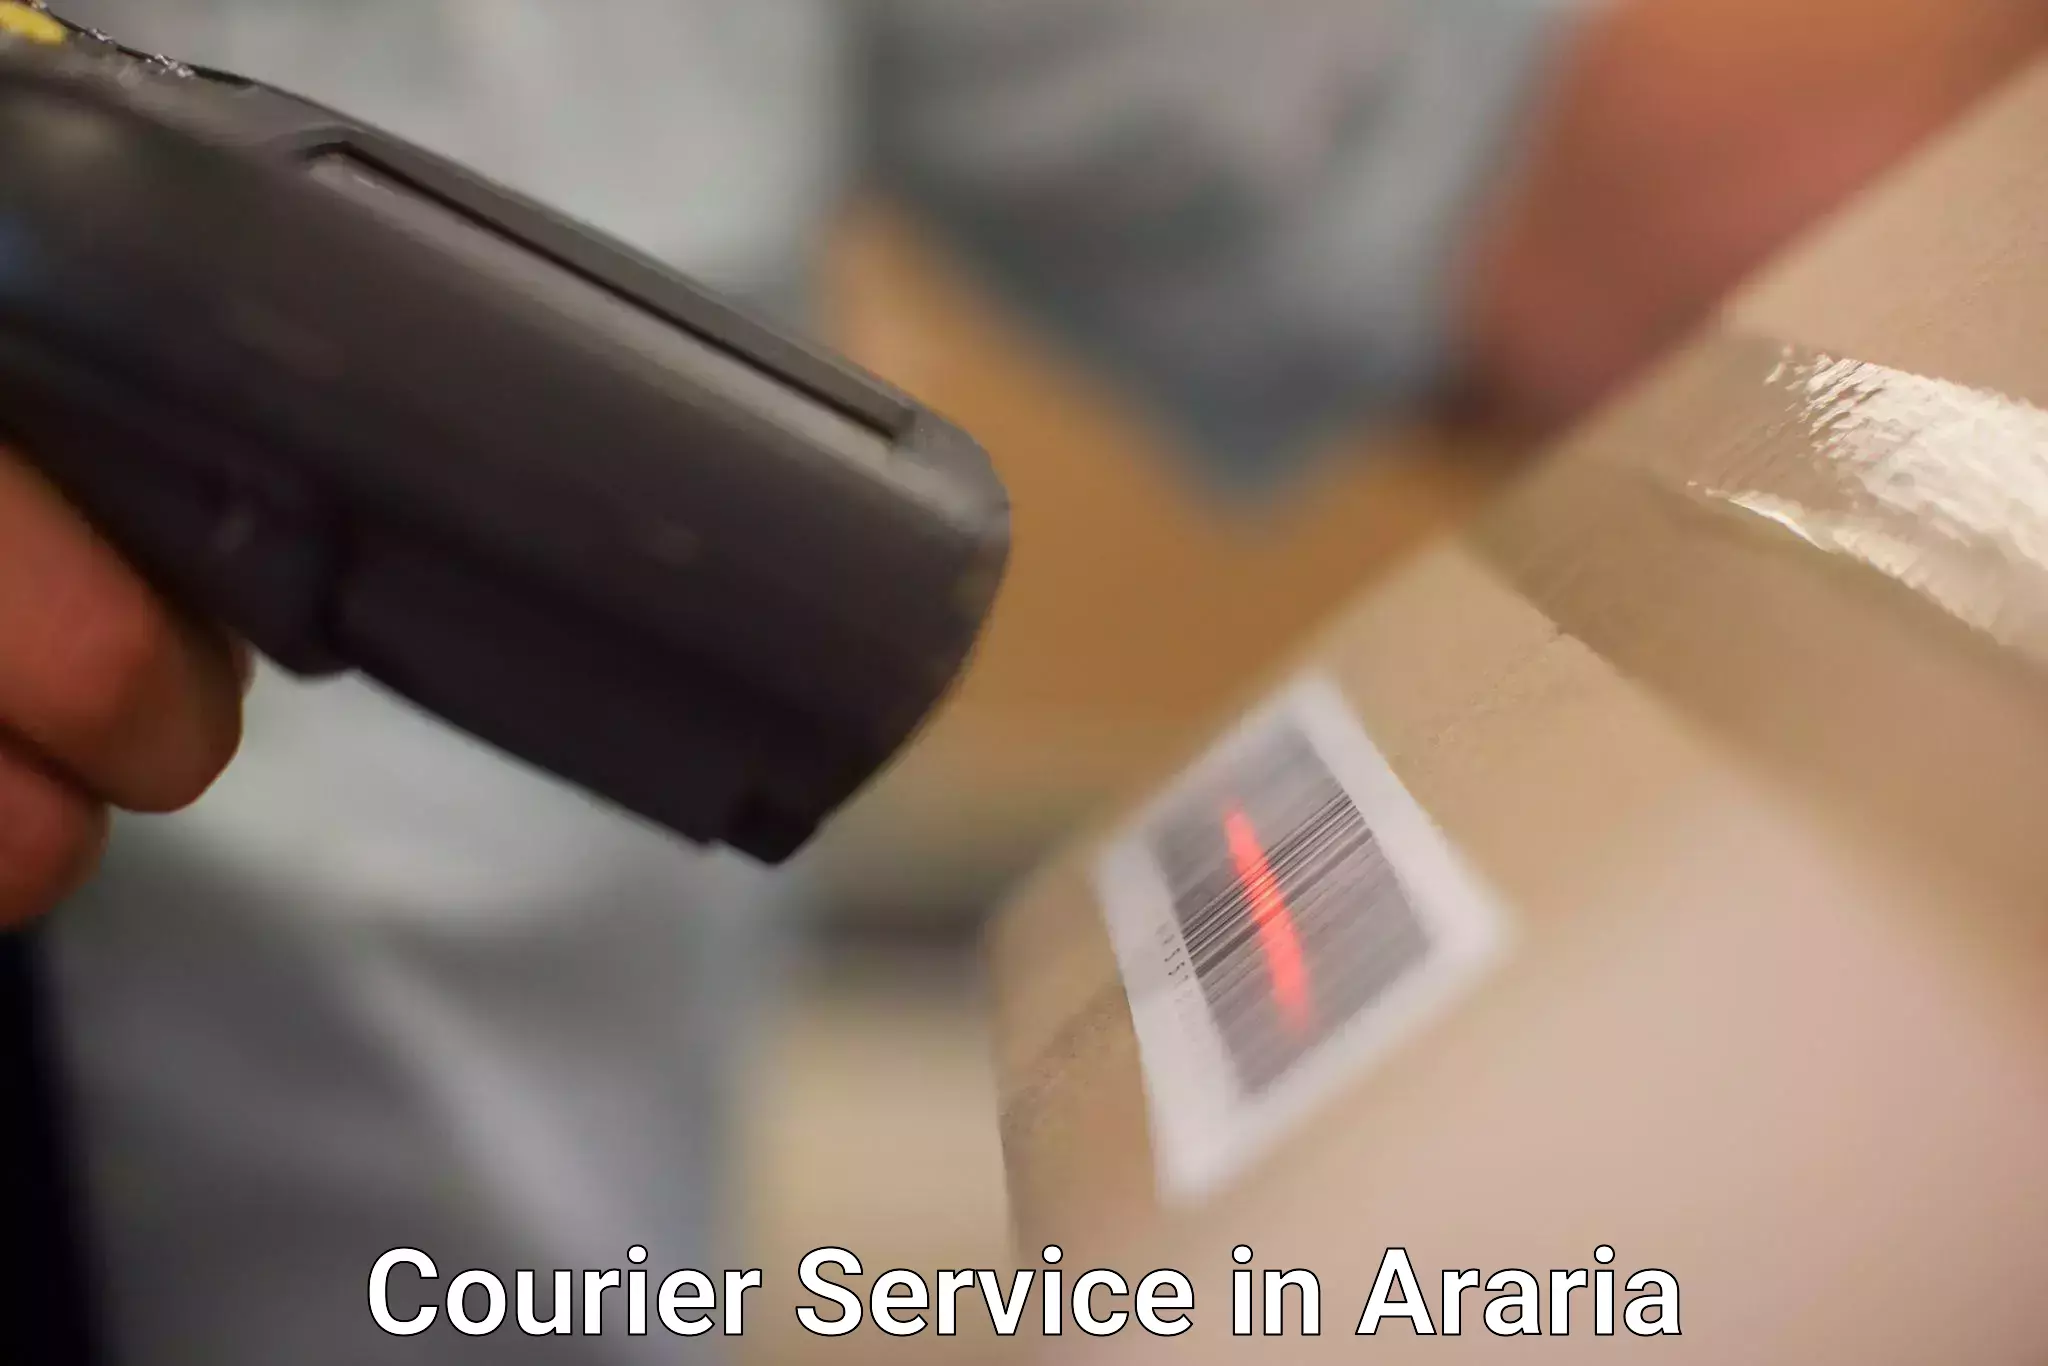 Efficient cargo handling in Araria